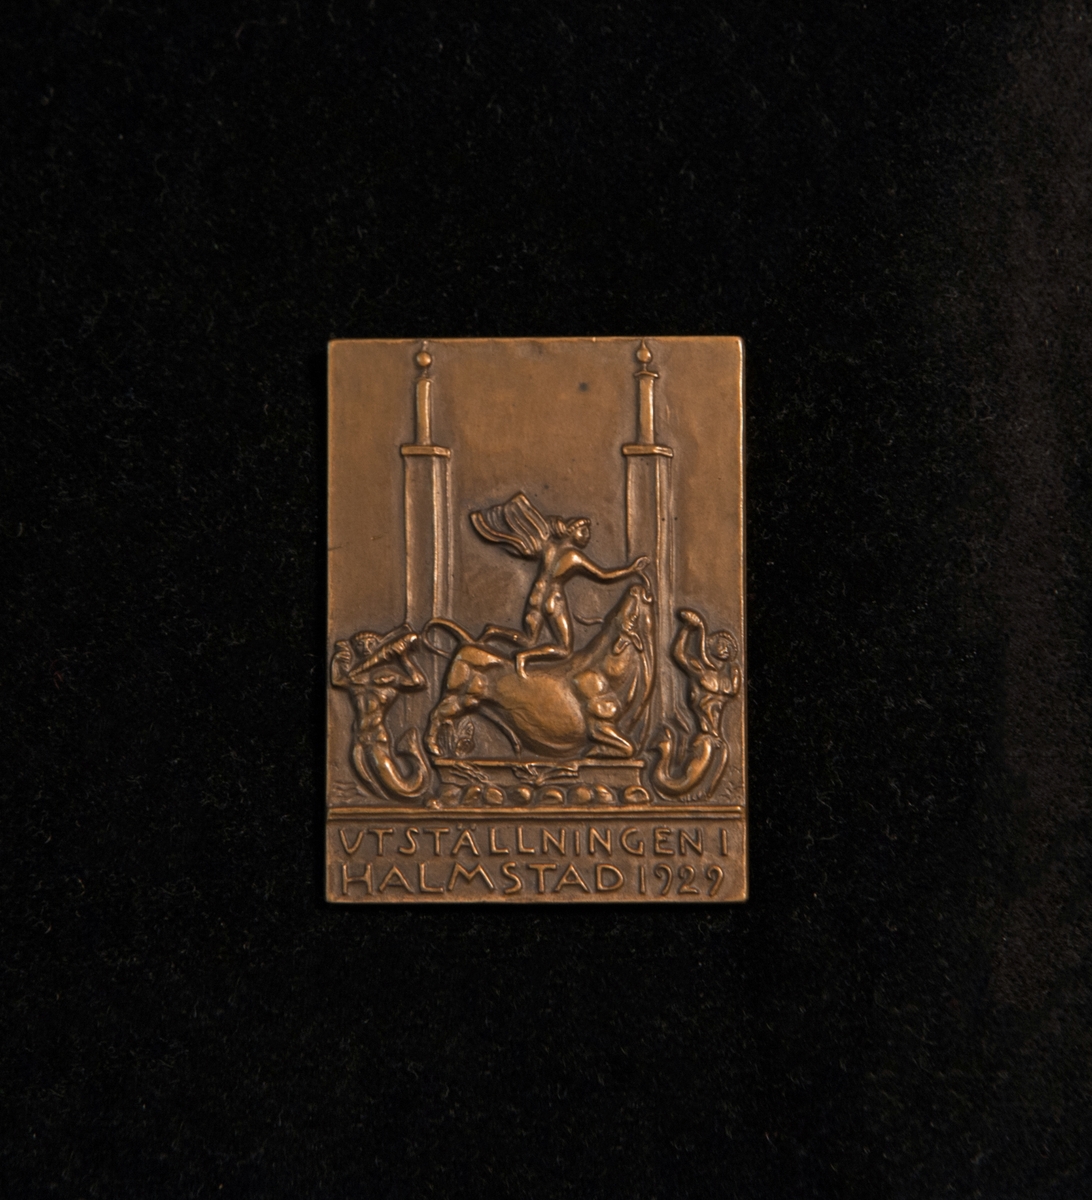 Plakett i brons. Åtsida: Bild av tre mansgestalter och en tjur. Text "Utställningen i Halmstad 1929". Frånsida: Graverad logotype "Löfsko".